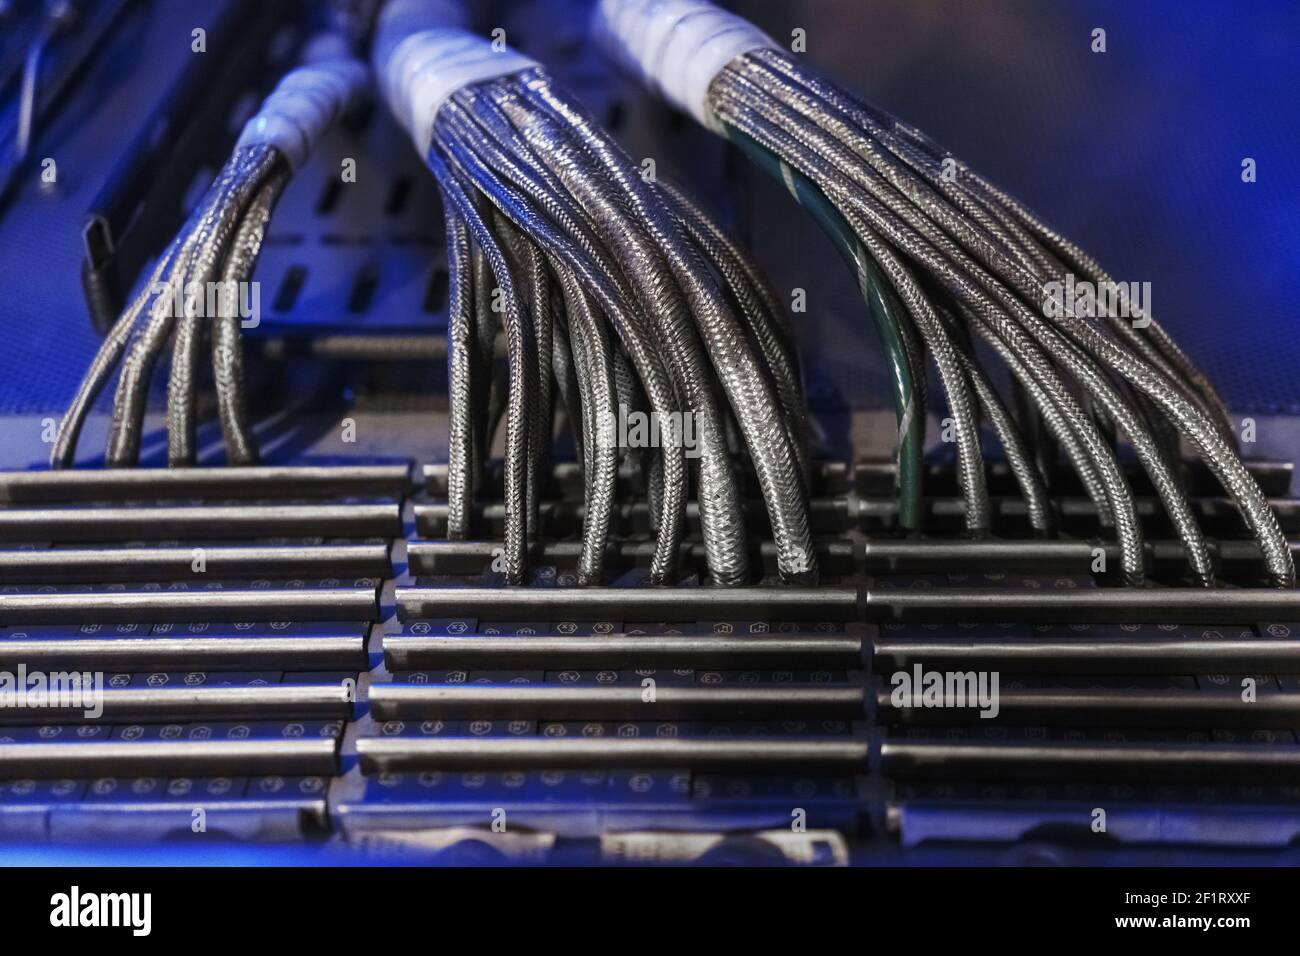 Les fils technologiques dans une gaine métallique sont placés dans un canal de câble pour transmettre la tension et les impulsions des capteurs. Câble d'alimentation dans une gaine renforcée. Banque D'Images